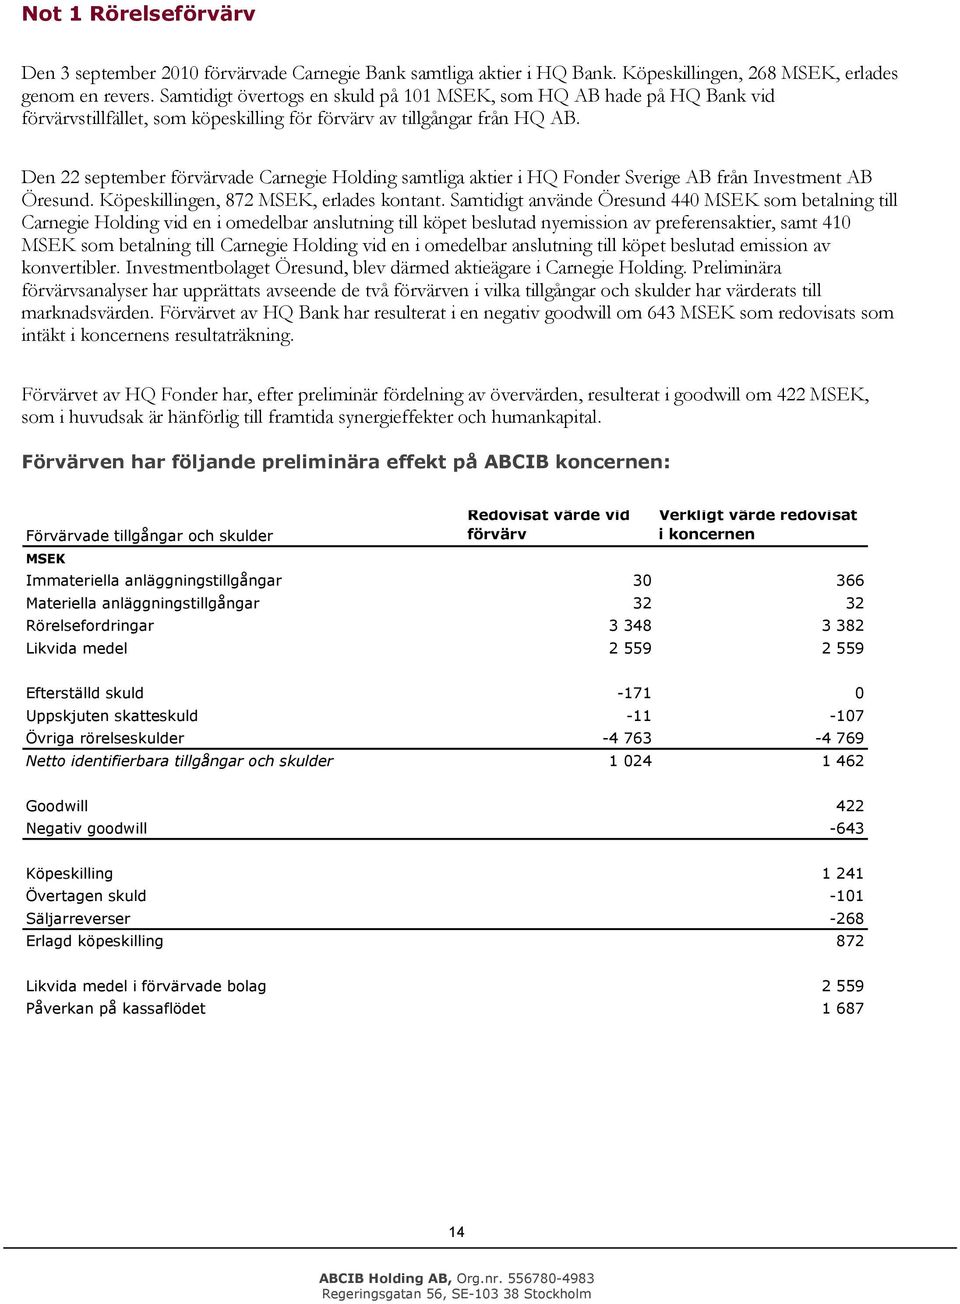 Den 22 september förvärvade Carnegie Hlding samtliga aktier i HQ Fnder Sverige AB från Investment AB Öresund. Köpeskillingen, 872 MSEK, erlades kntant.